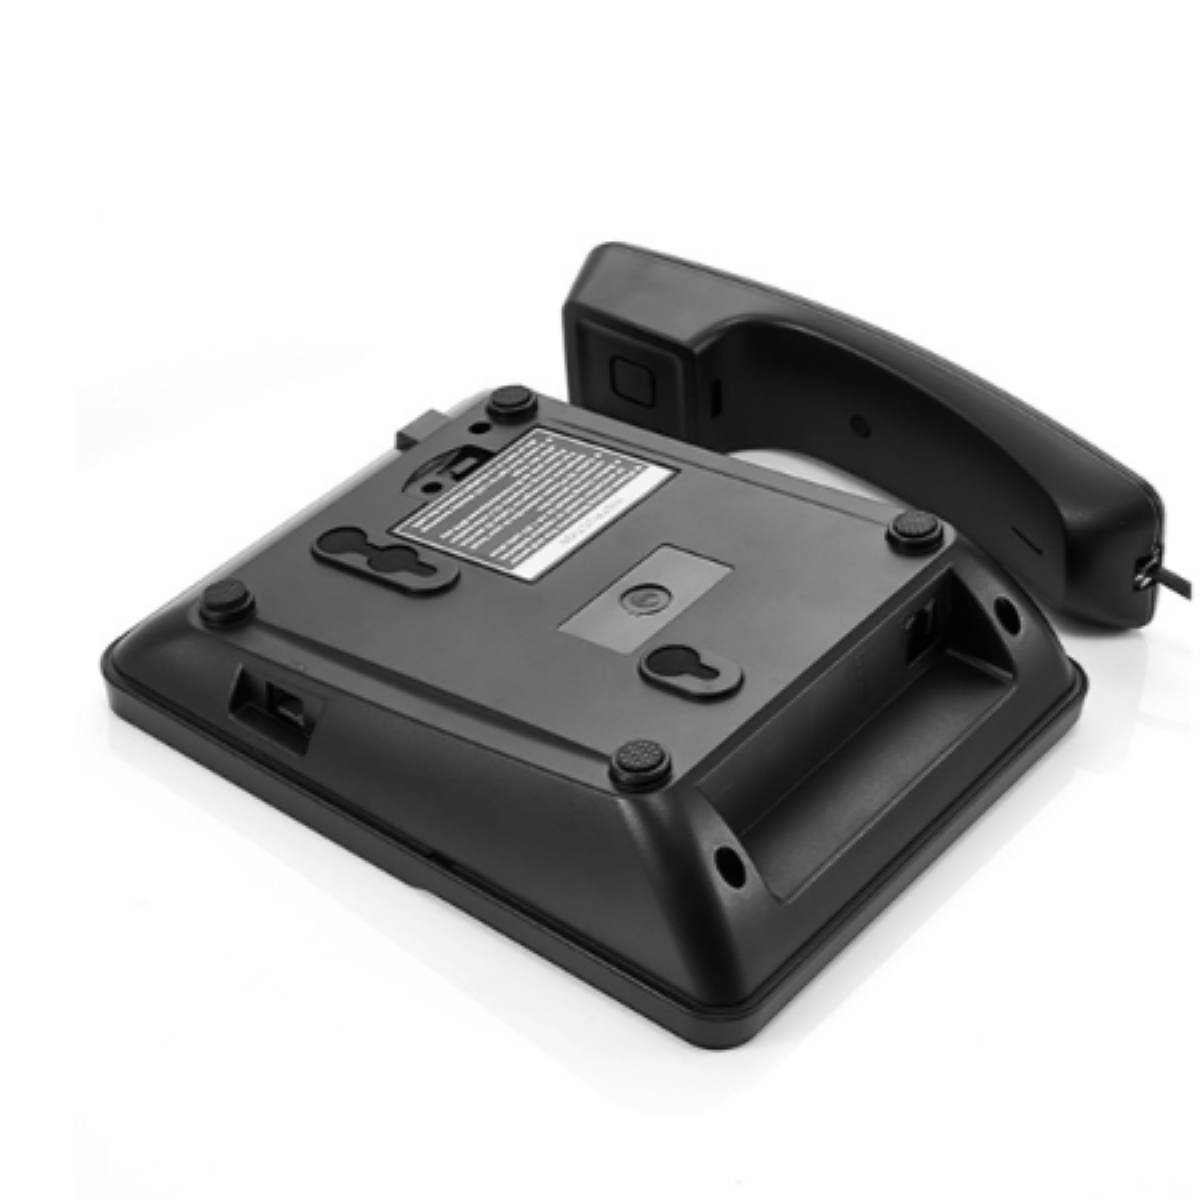 und - Tisch- Telefon VTC-500 Wandtelefon, LACAMAX Freisprechen Festnetztelefon